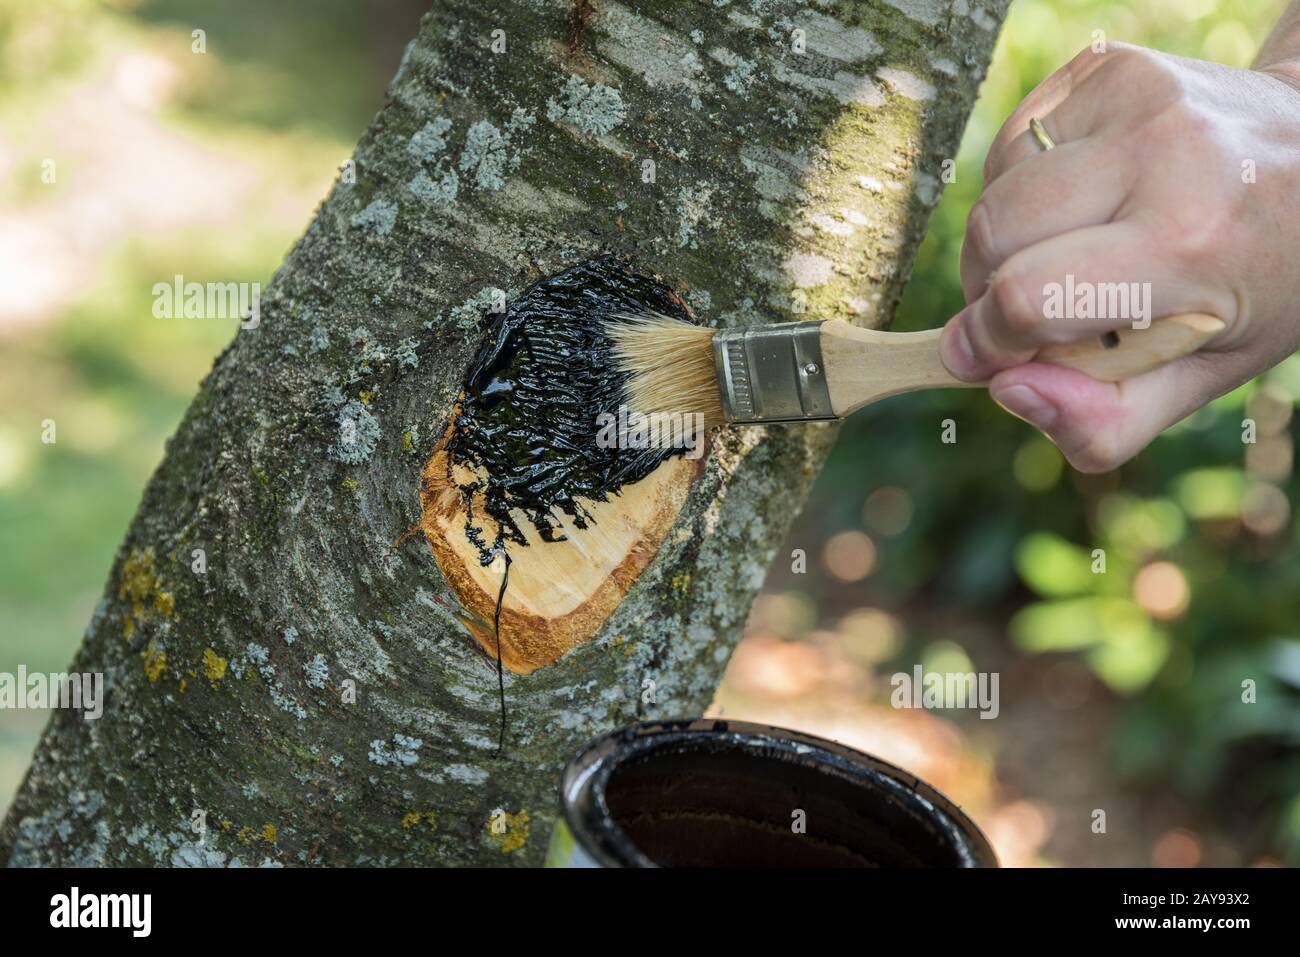 La personne brosse le goudron de bois sur la surface coupée d'un arbre de fruits - gros plan Banque D'Images